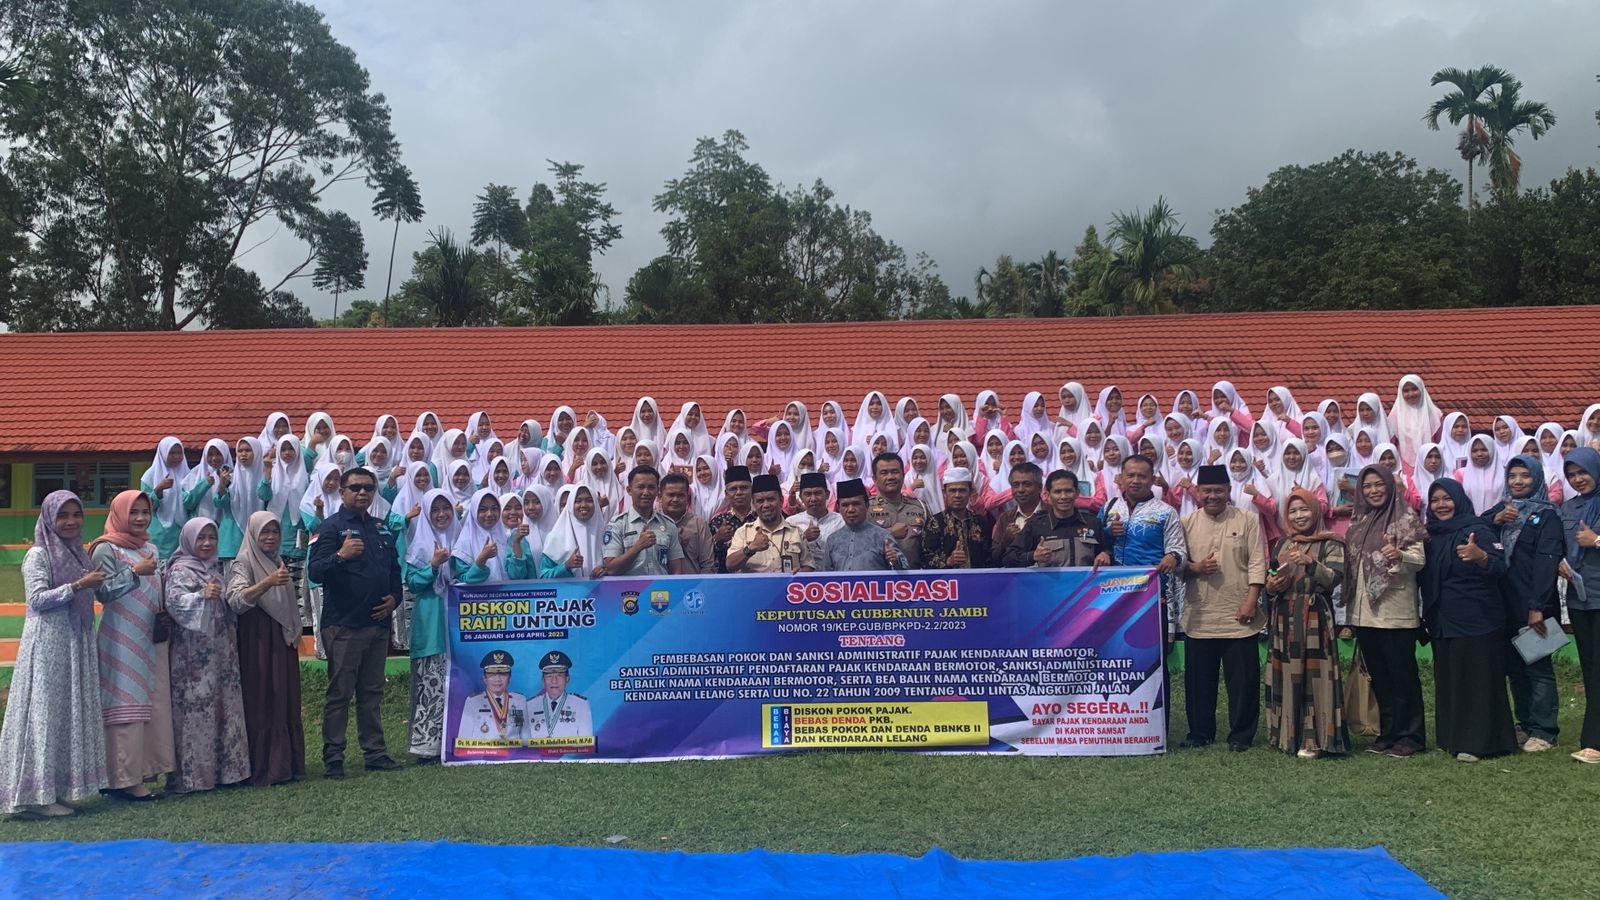 Sosialisasi Tim Samsat Sungai Penuh Infokan Diskon Pajak dan Sumbangan Wajib Kendaraan di SMA N 4 Kerinci